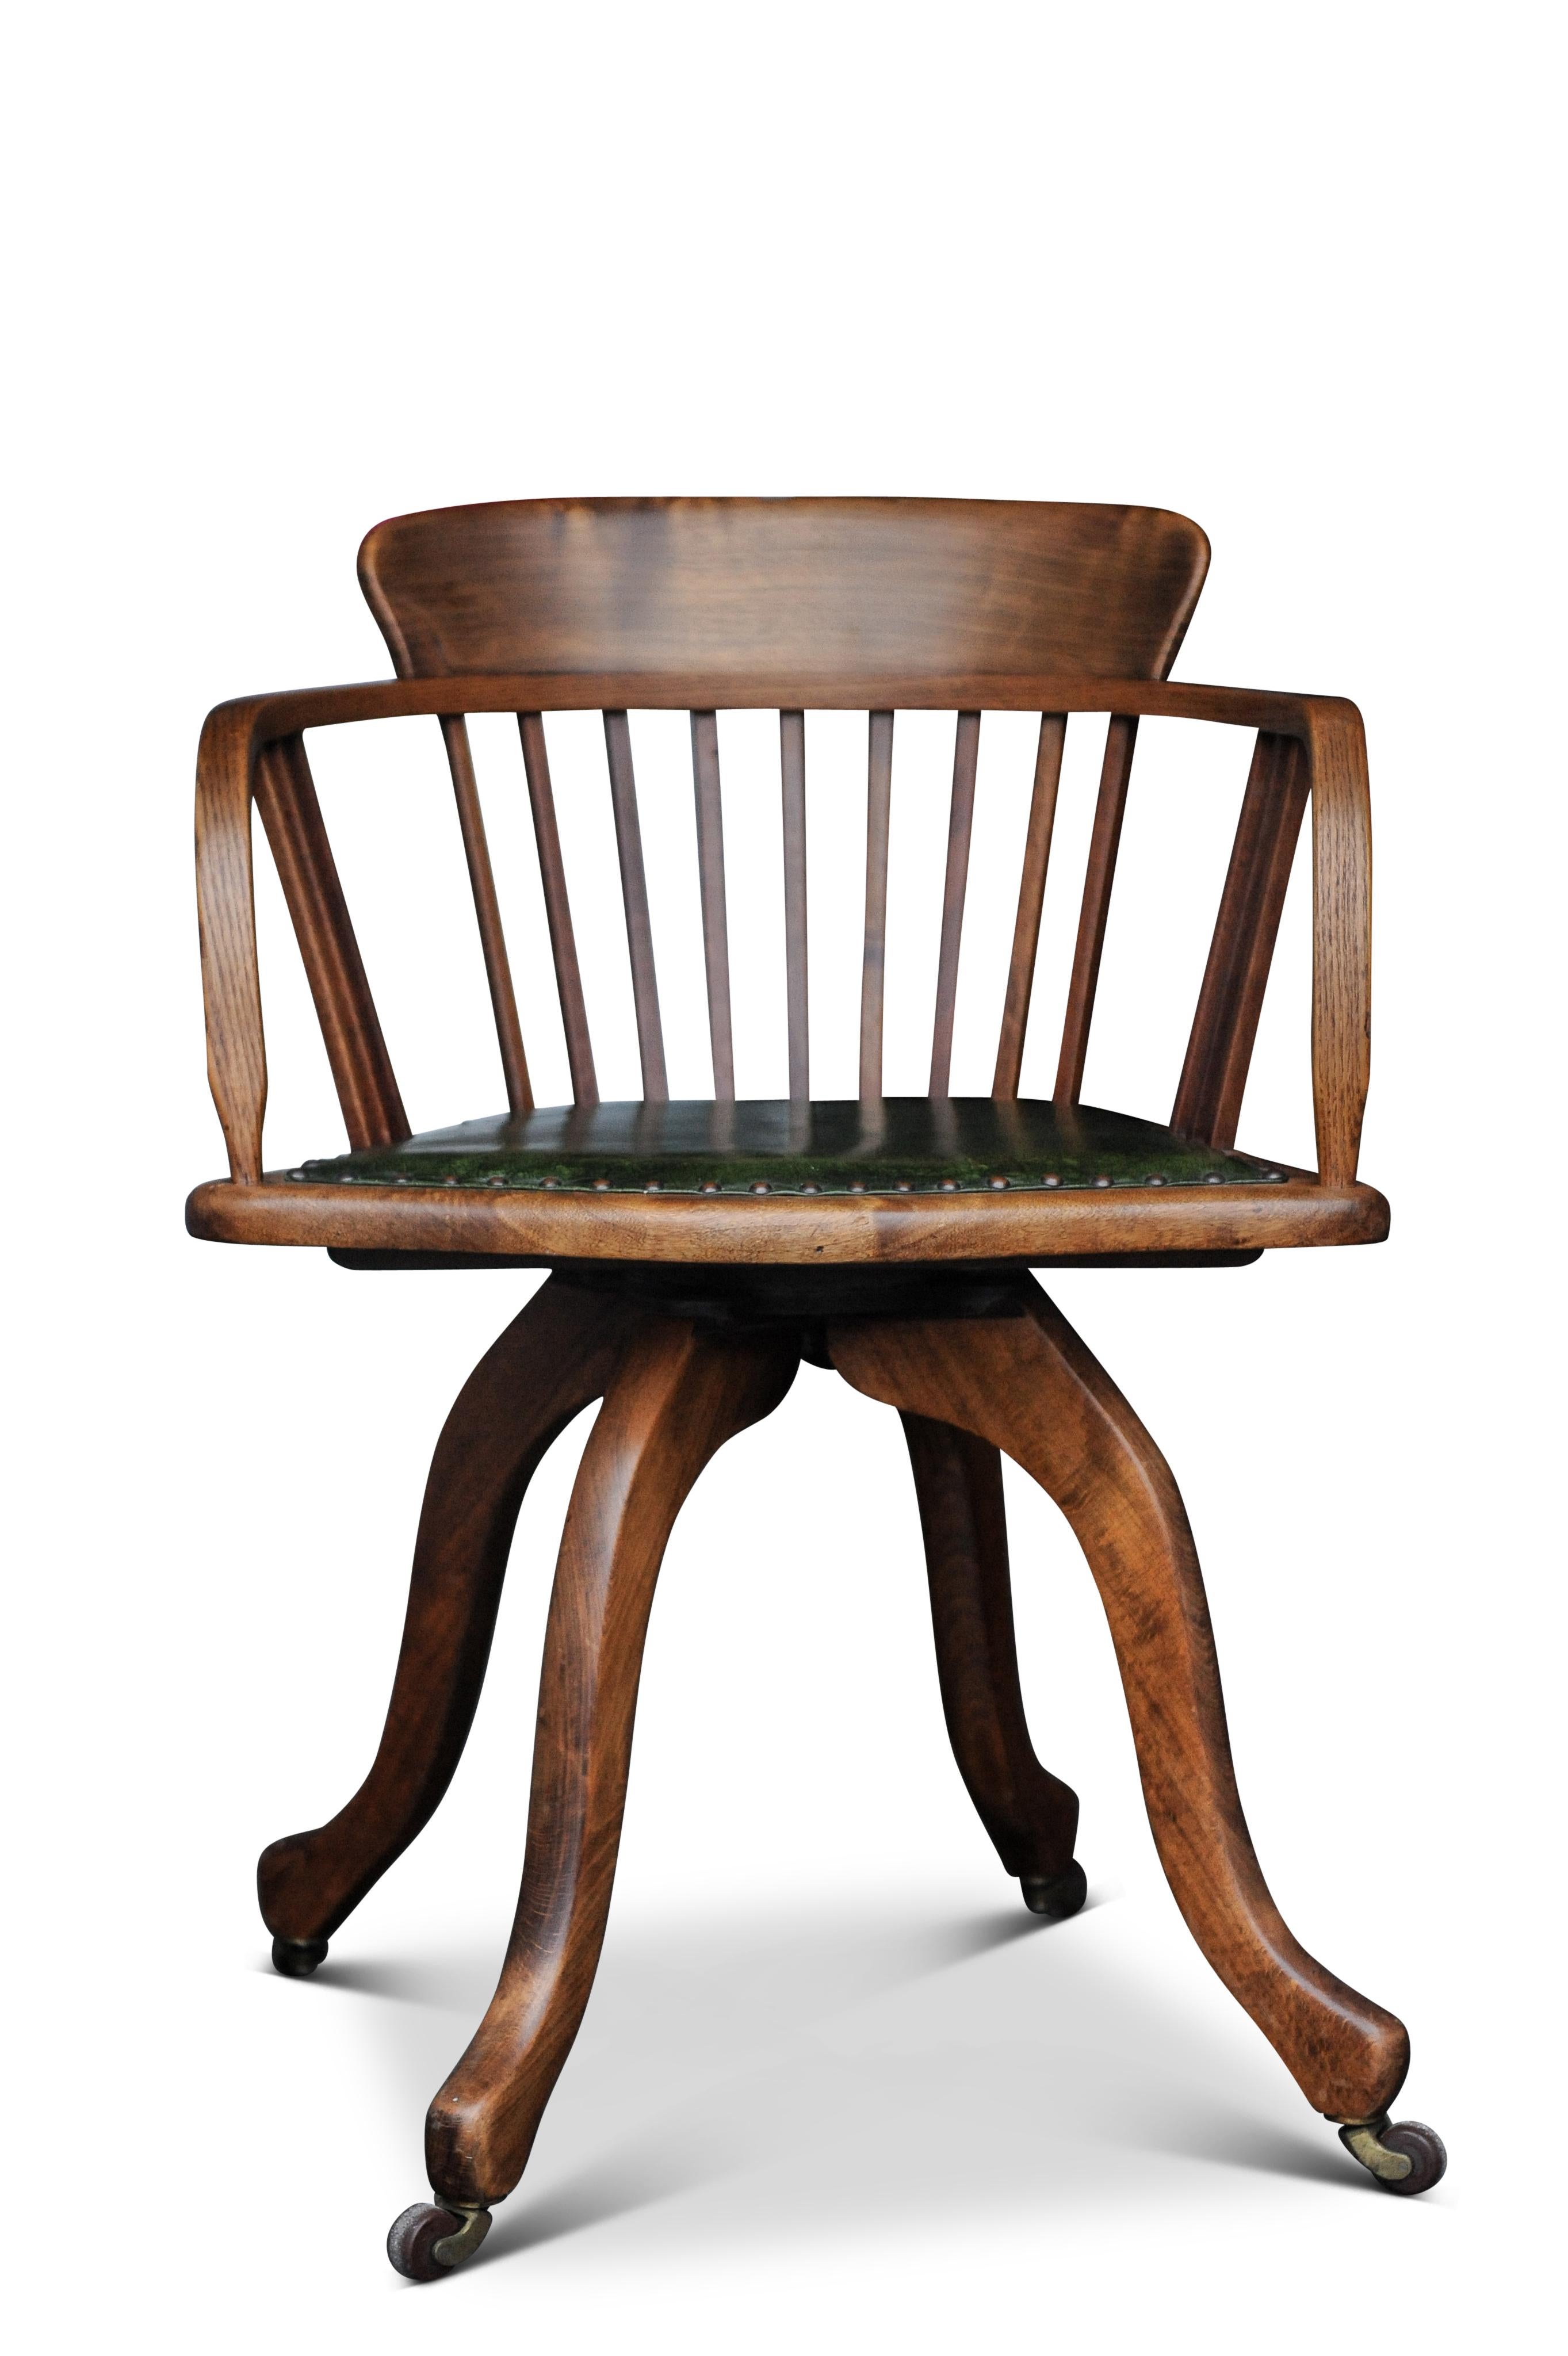 Viktorianische Eiche & Leder Schiene zurück drehbaren Schreibtisch Stuhl mit Stud Detaillierung 

Mit einem dunklen olivgrünen Sitz. 

Die Höhe bis zur Oberkante der Arme beträgt 71,5 cm.




